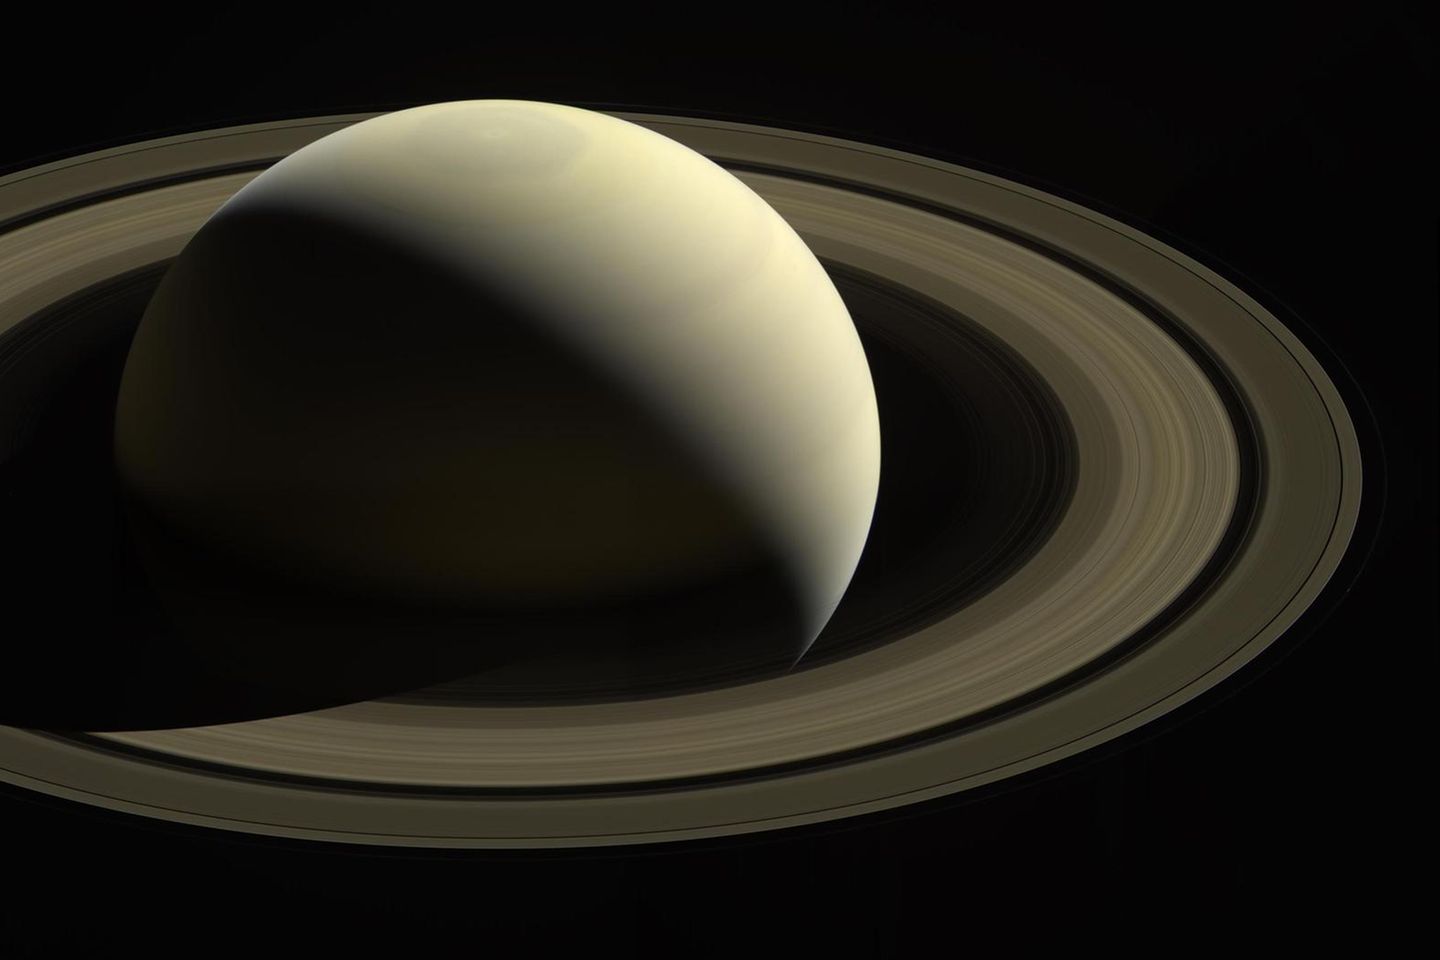 Die gewaltige Ausdehnung der Saturnringe täuscht. Sie bestehen aus – zumindest in astronomischem Maßstab – nur wenig Eis und Gestein: 15 Billiarden Tonnen, ein Fünftausendstel des Erdmondes